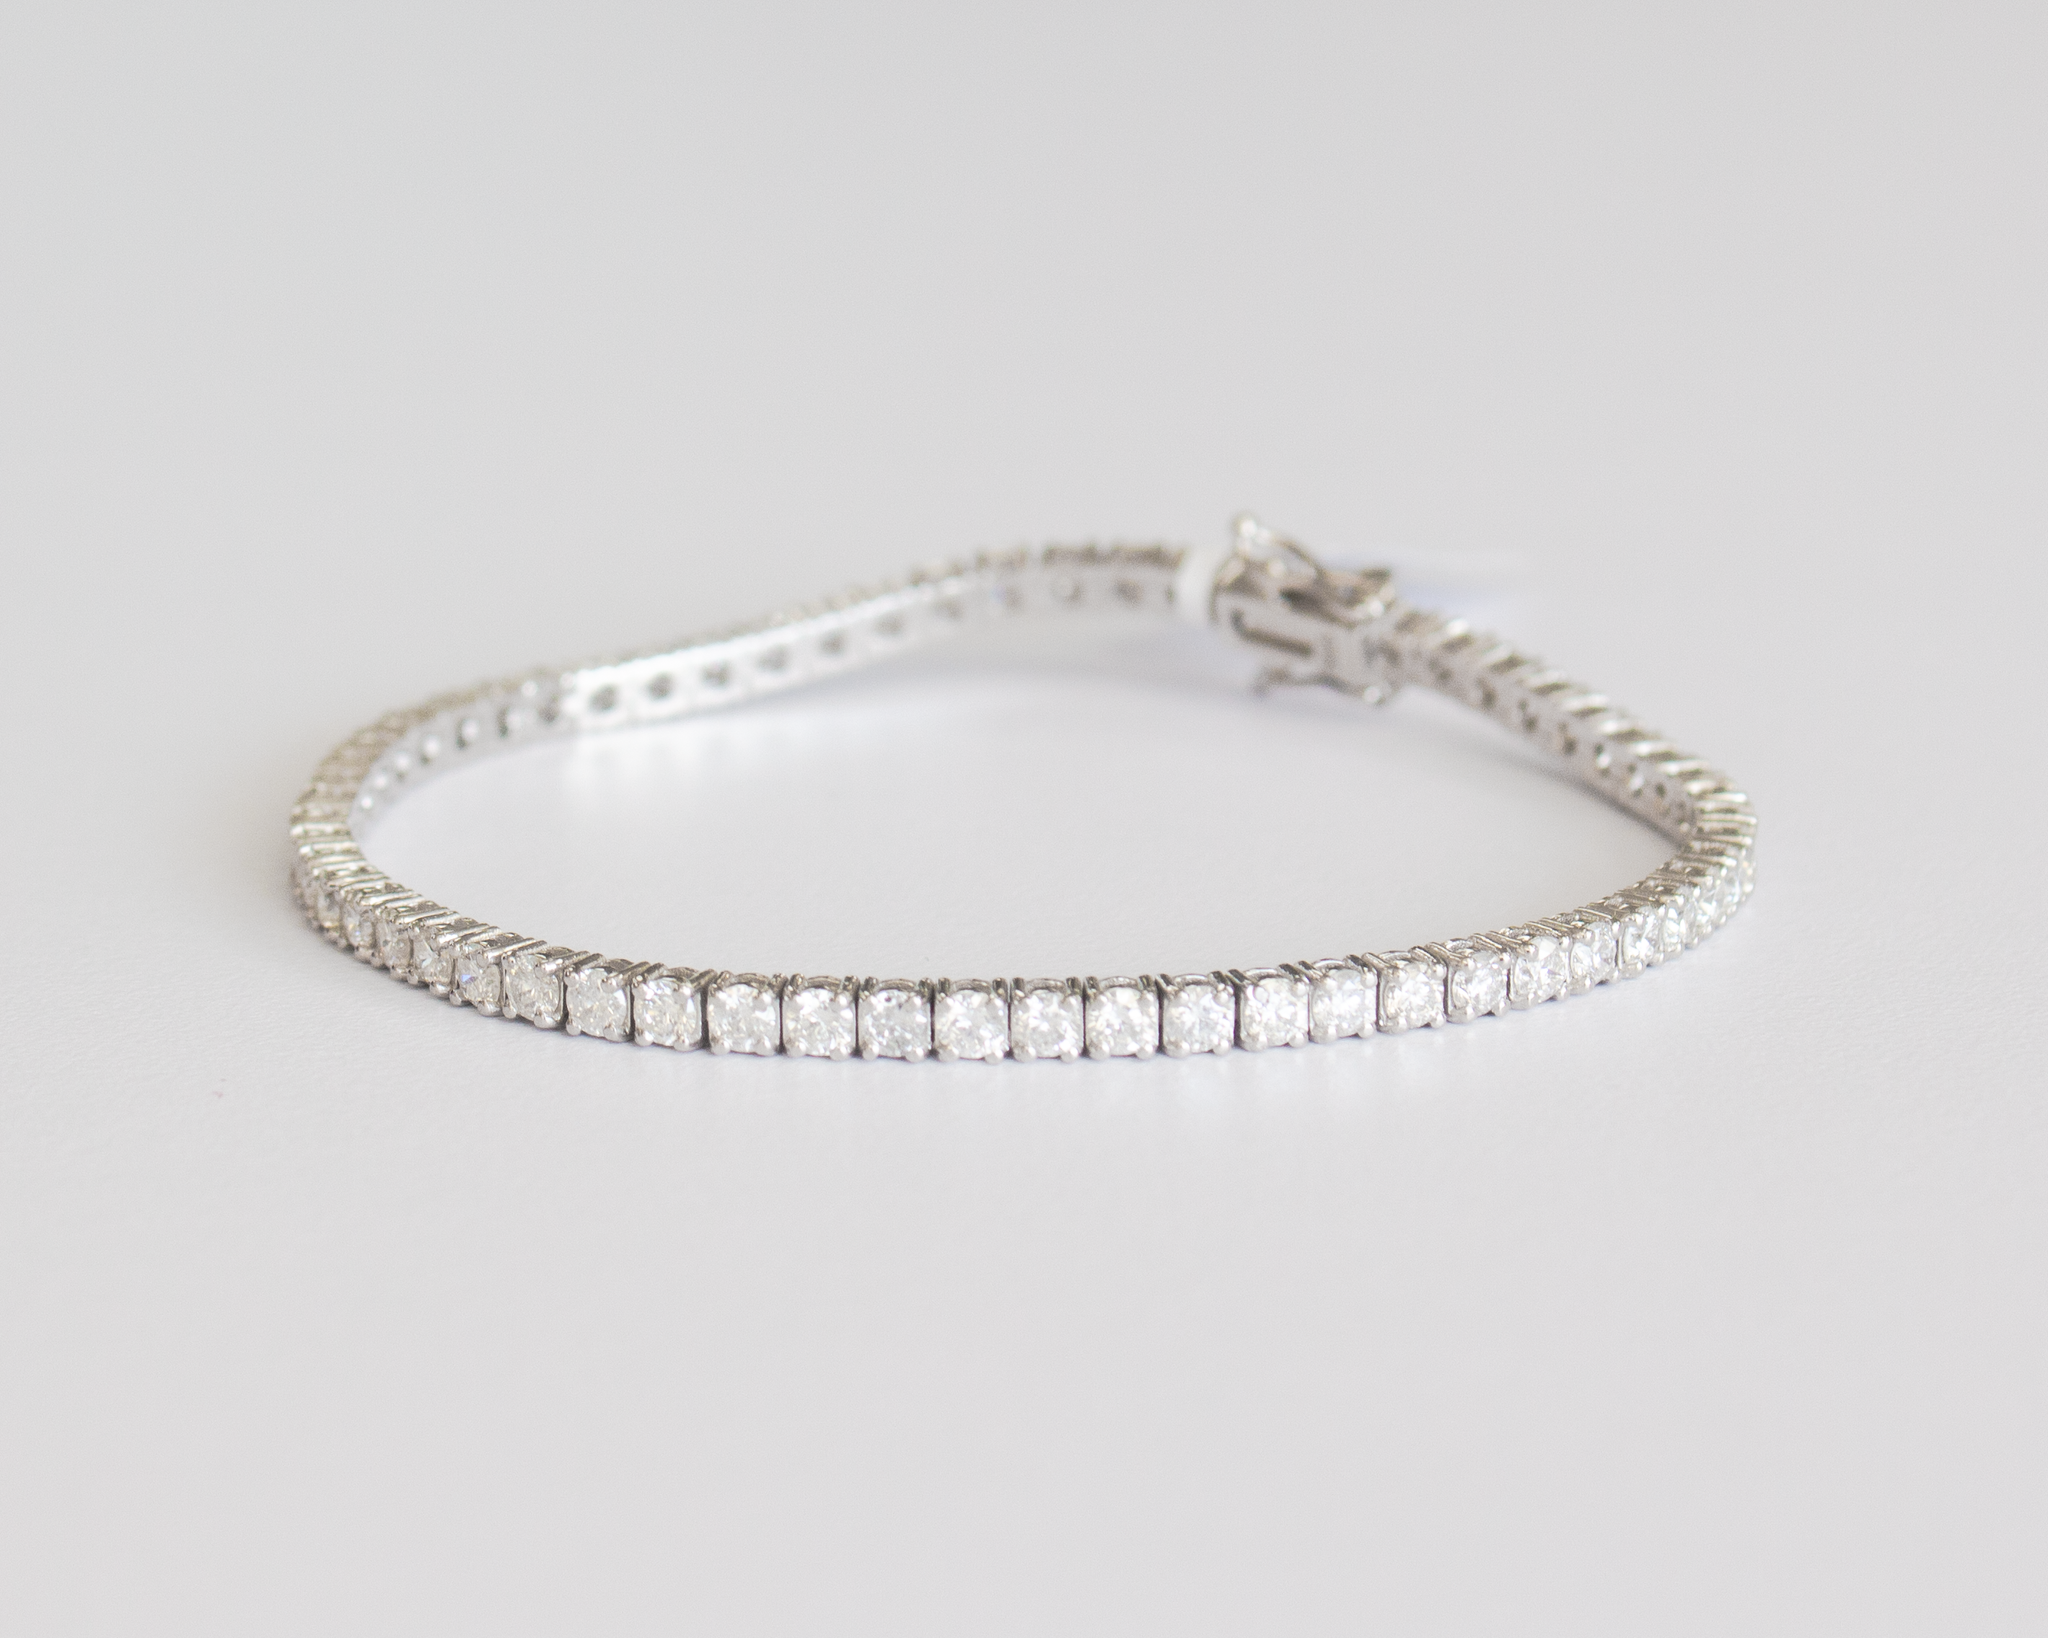 5 Carat Diamond Tennis Bracelet | Barkev's